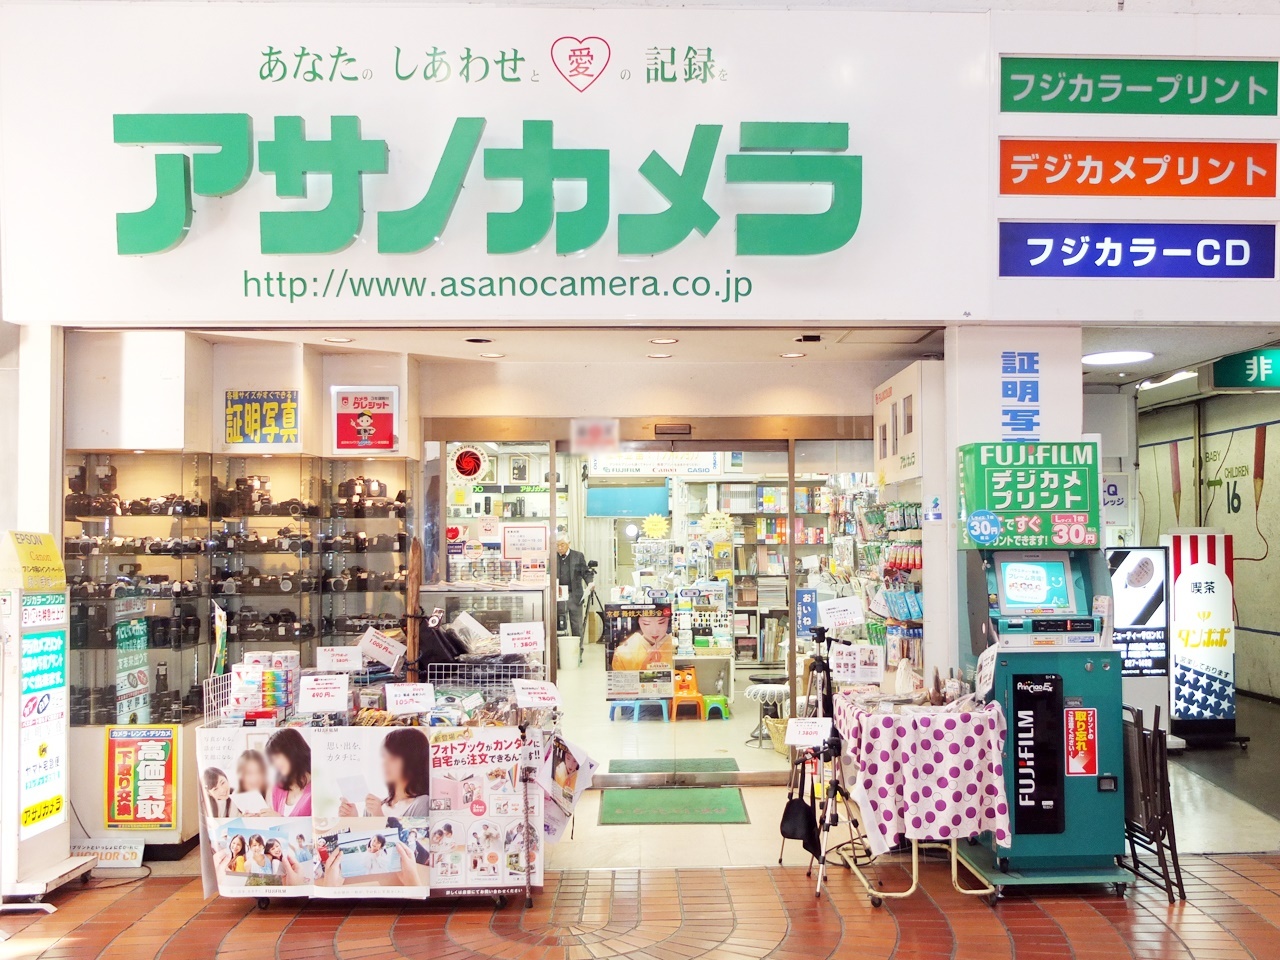 冈山表町商店街 Asano Camera Japan Shopping Now